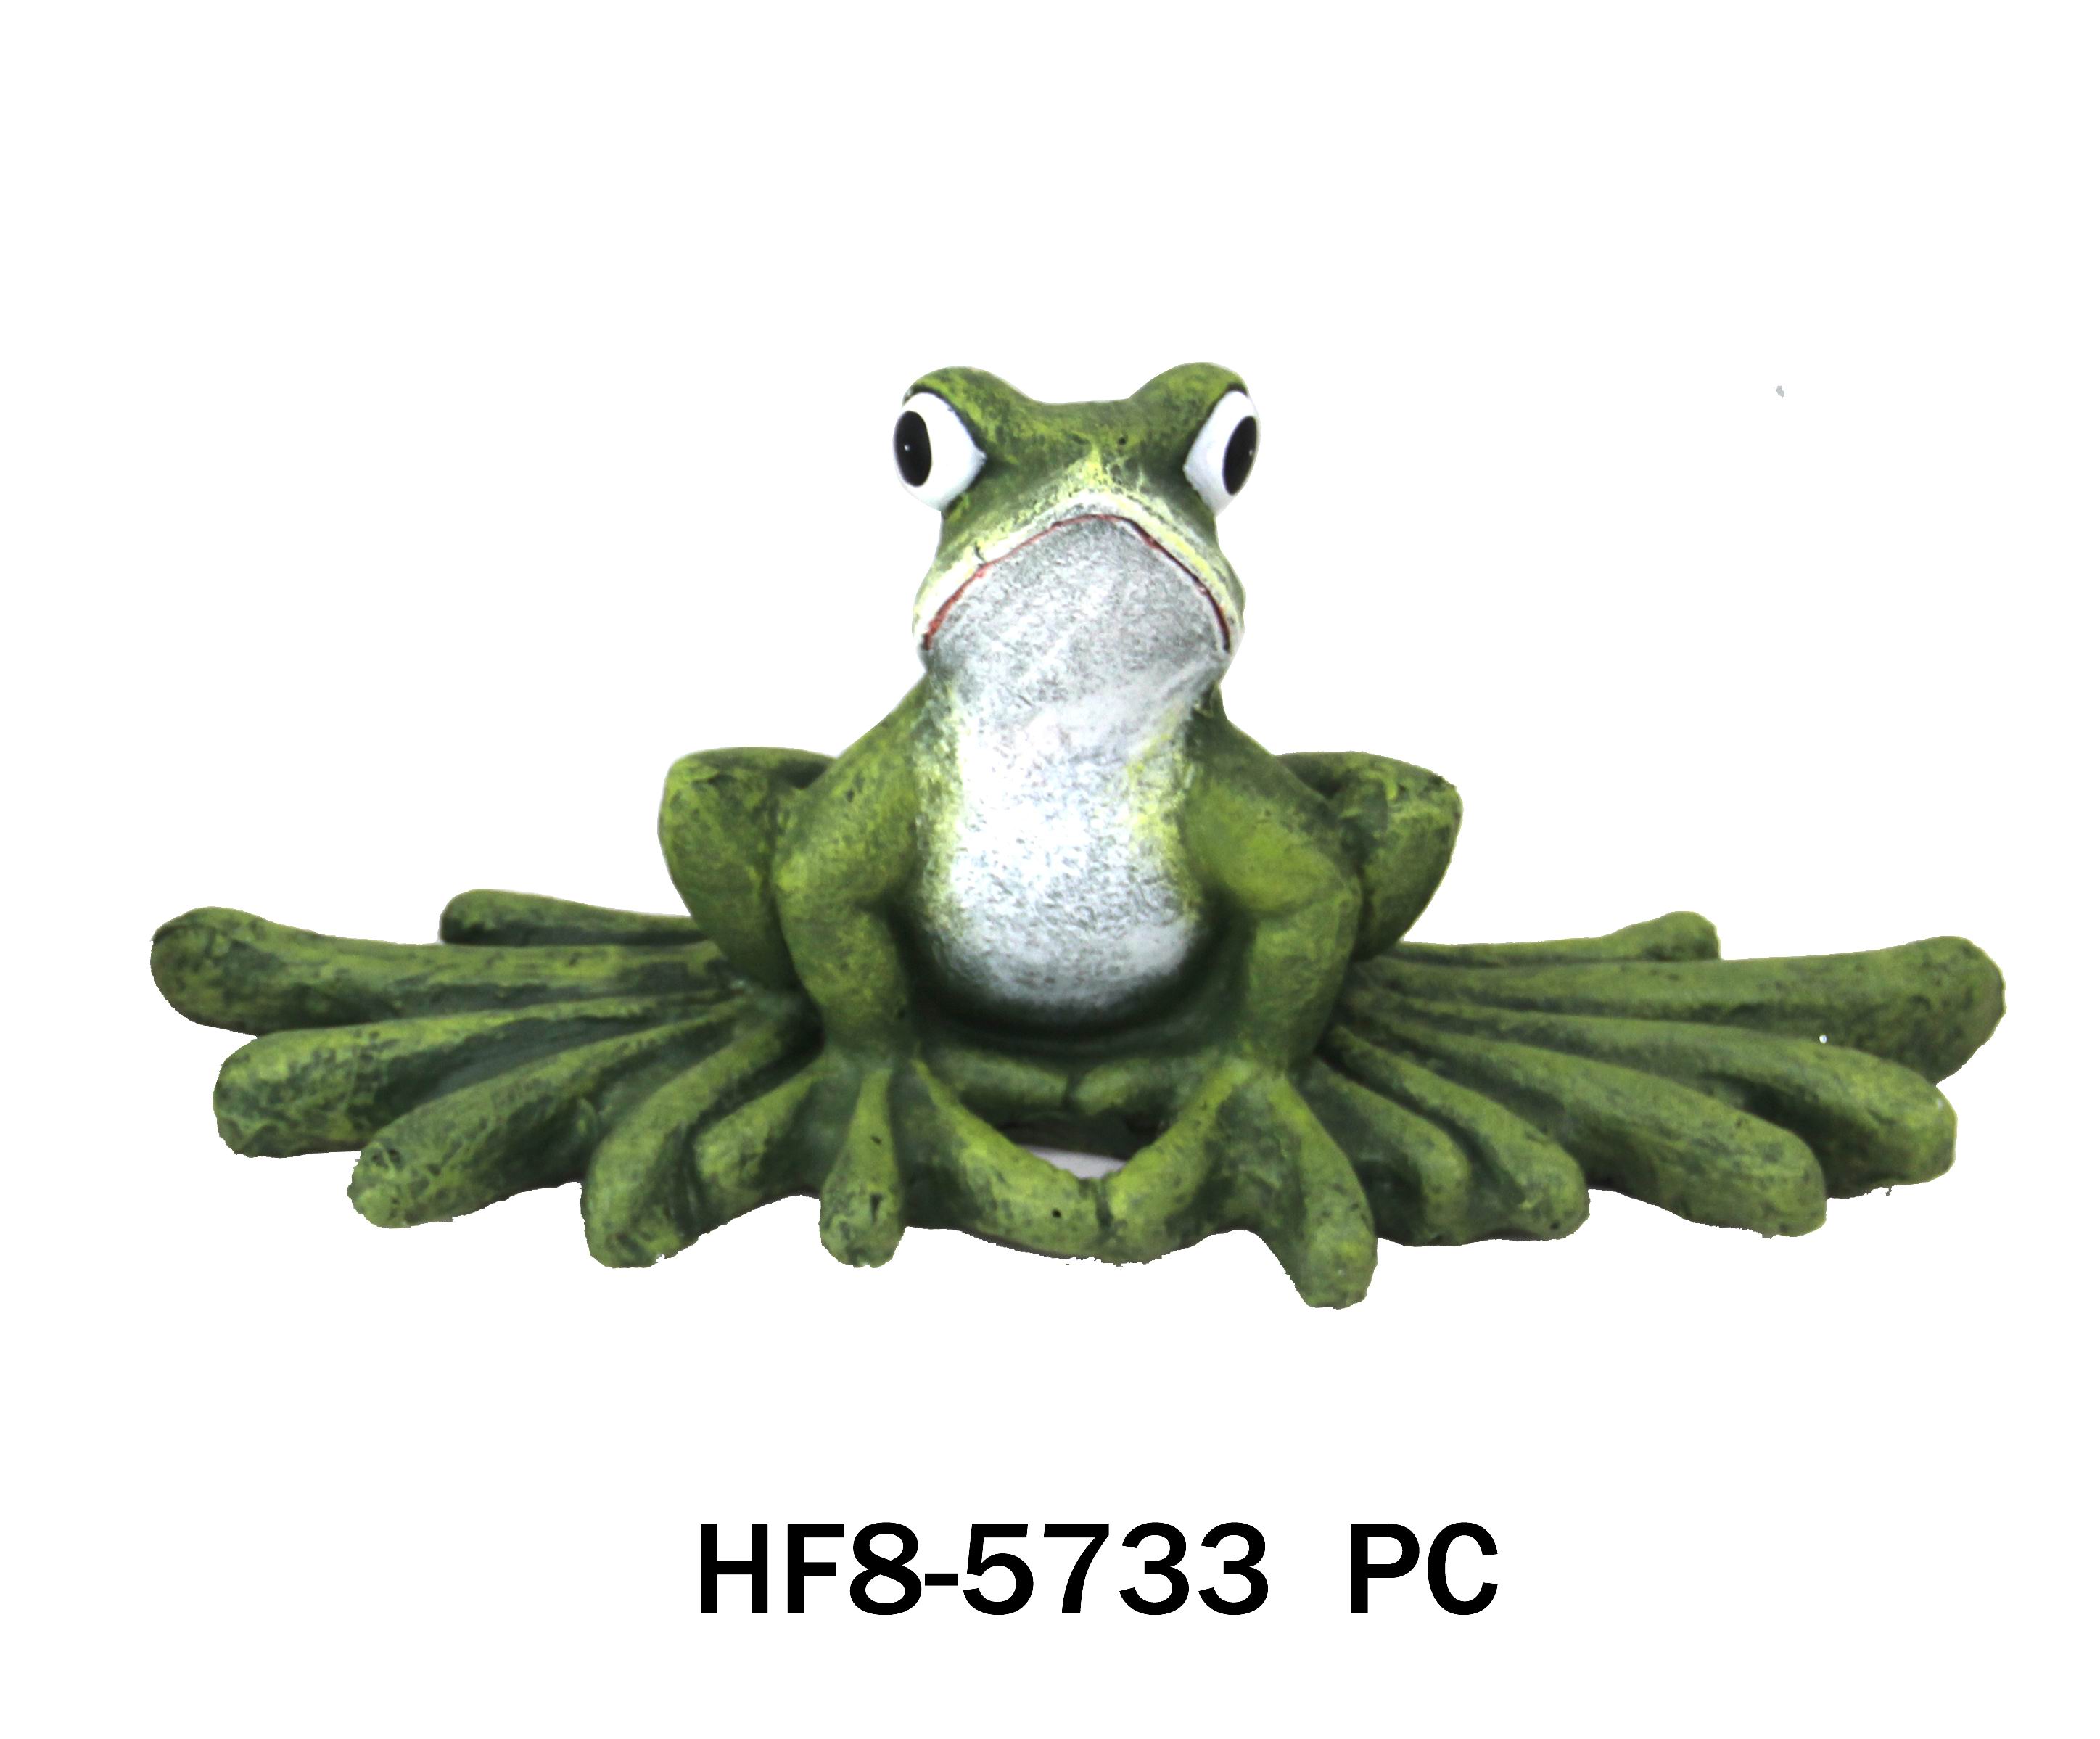 HF8-5733